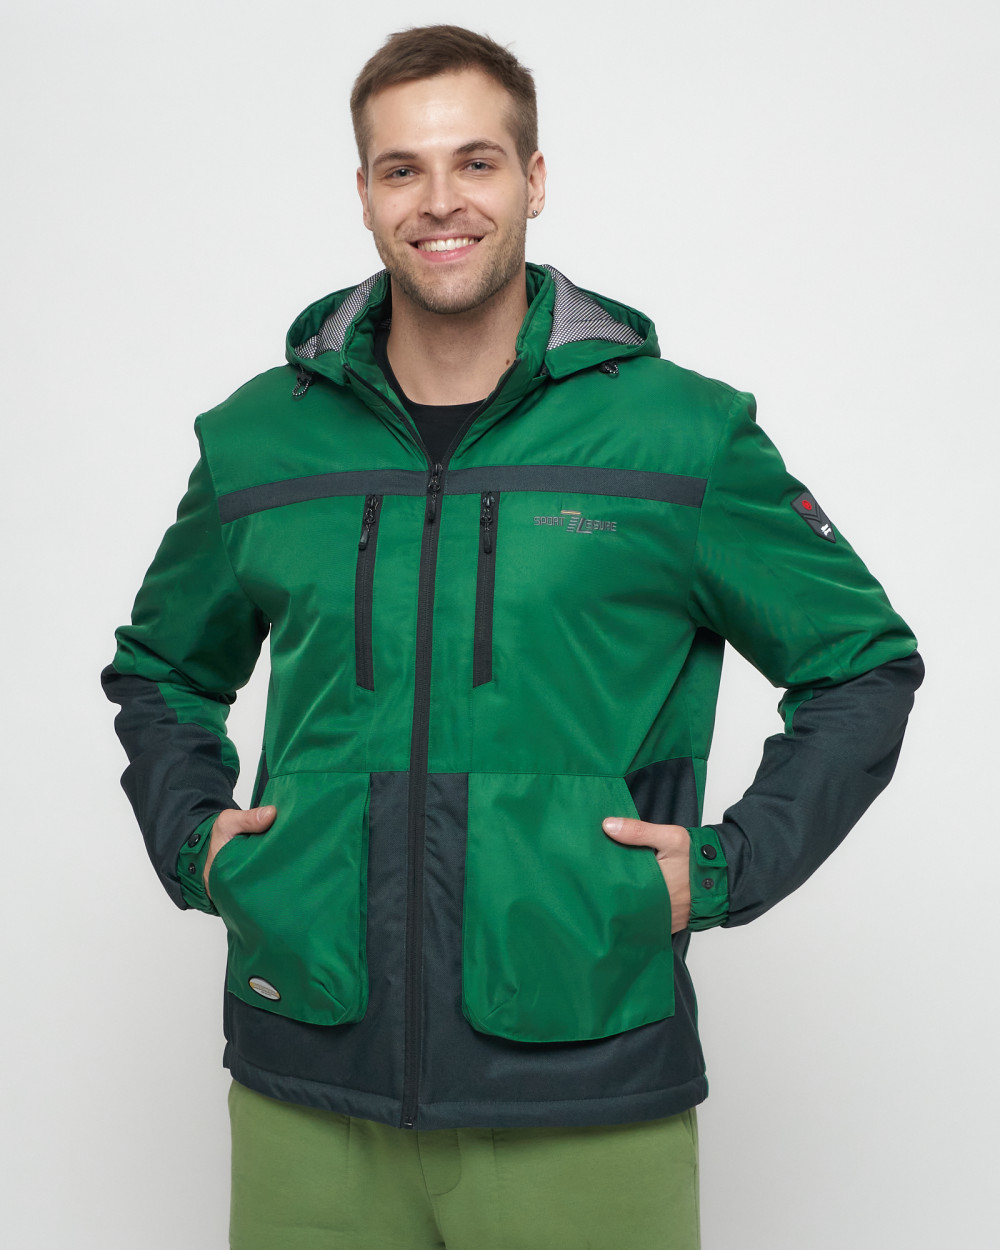 Купить куртку мужскую спортивную весеннюю оптом от производителя недорого в Москве 8815Z 1